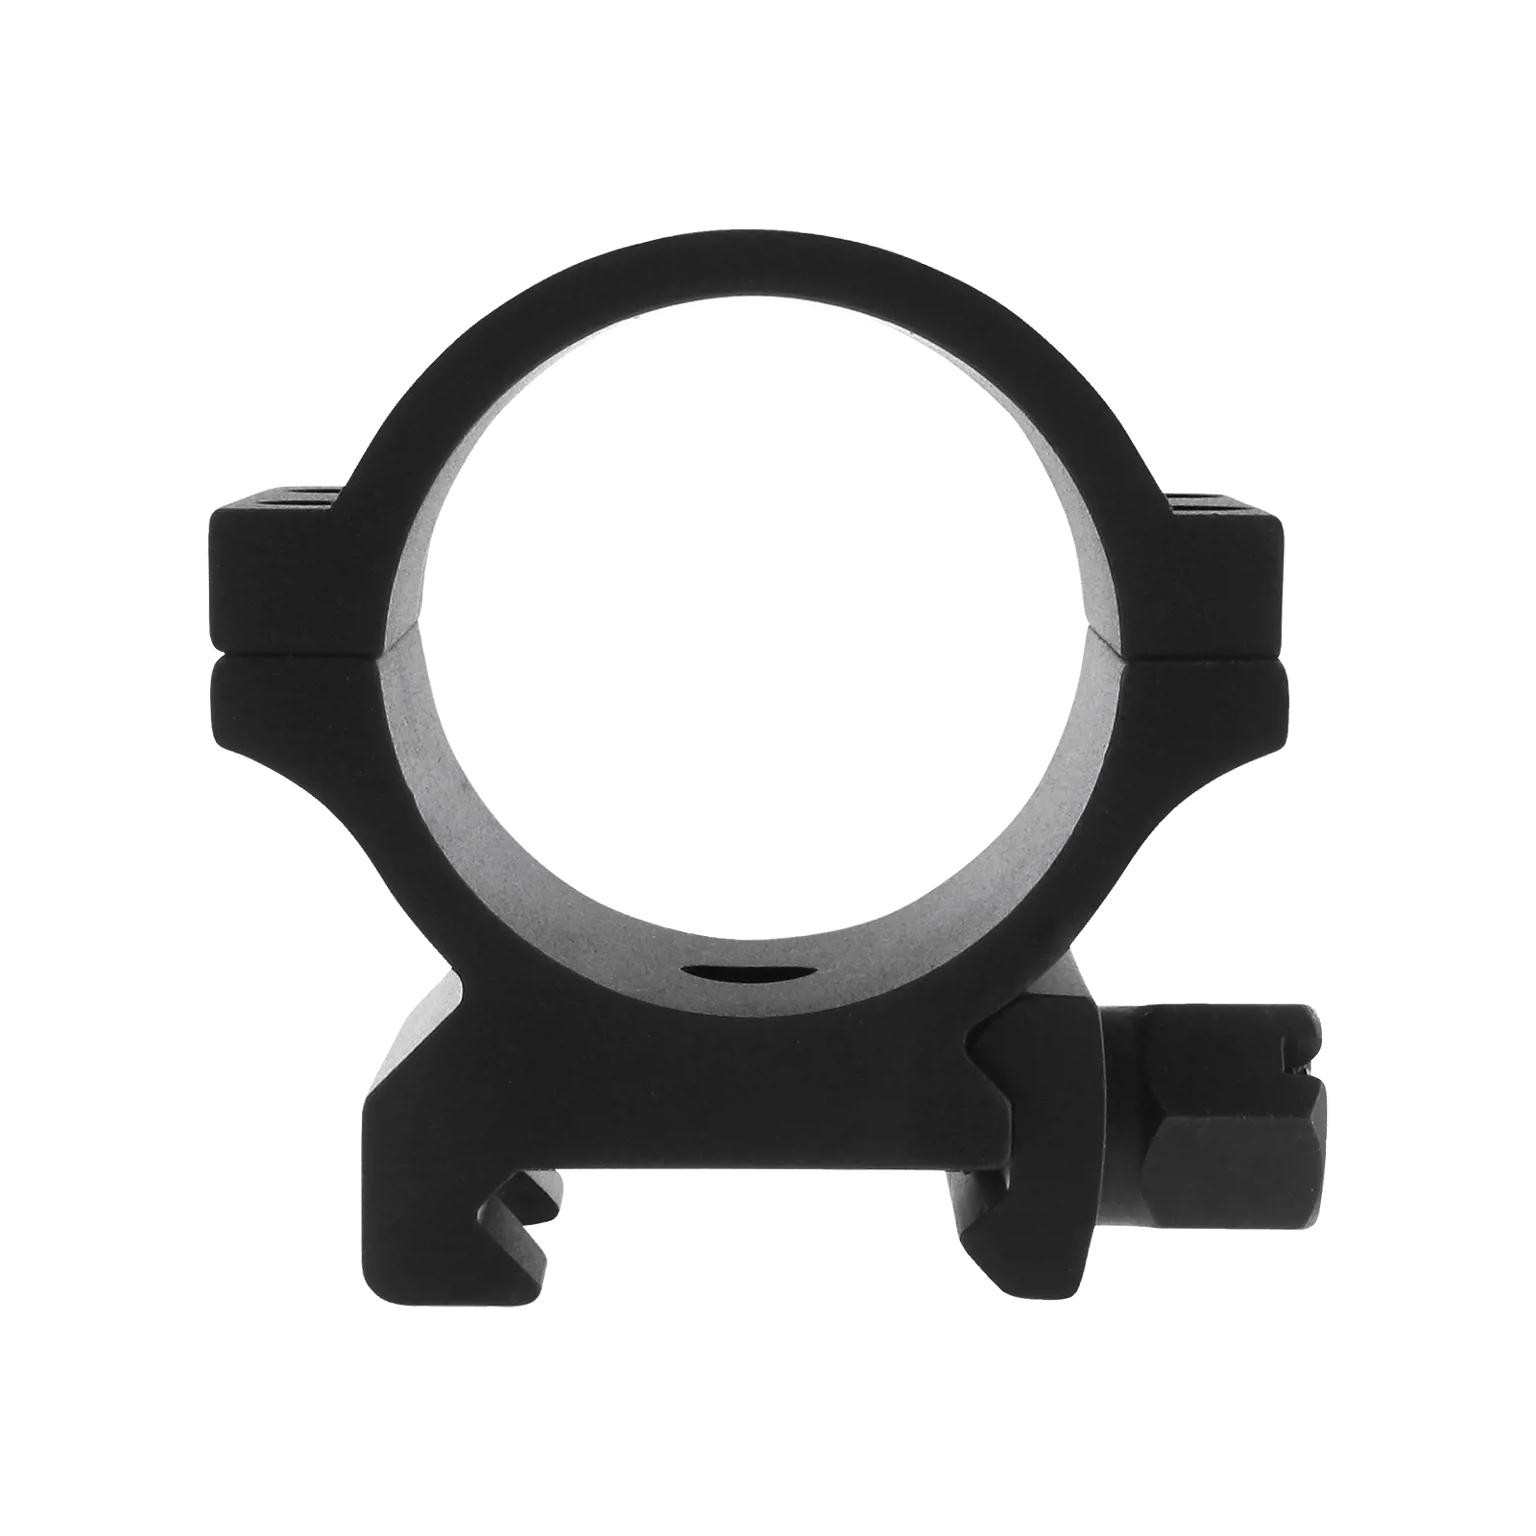 Ring 30 mm - Niedrig und breit passend für Weaver/Picatinny Scheine  - 2